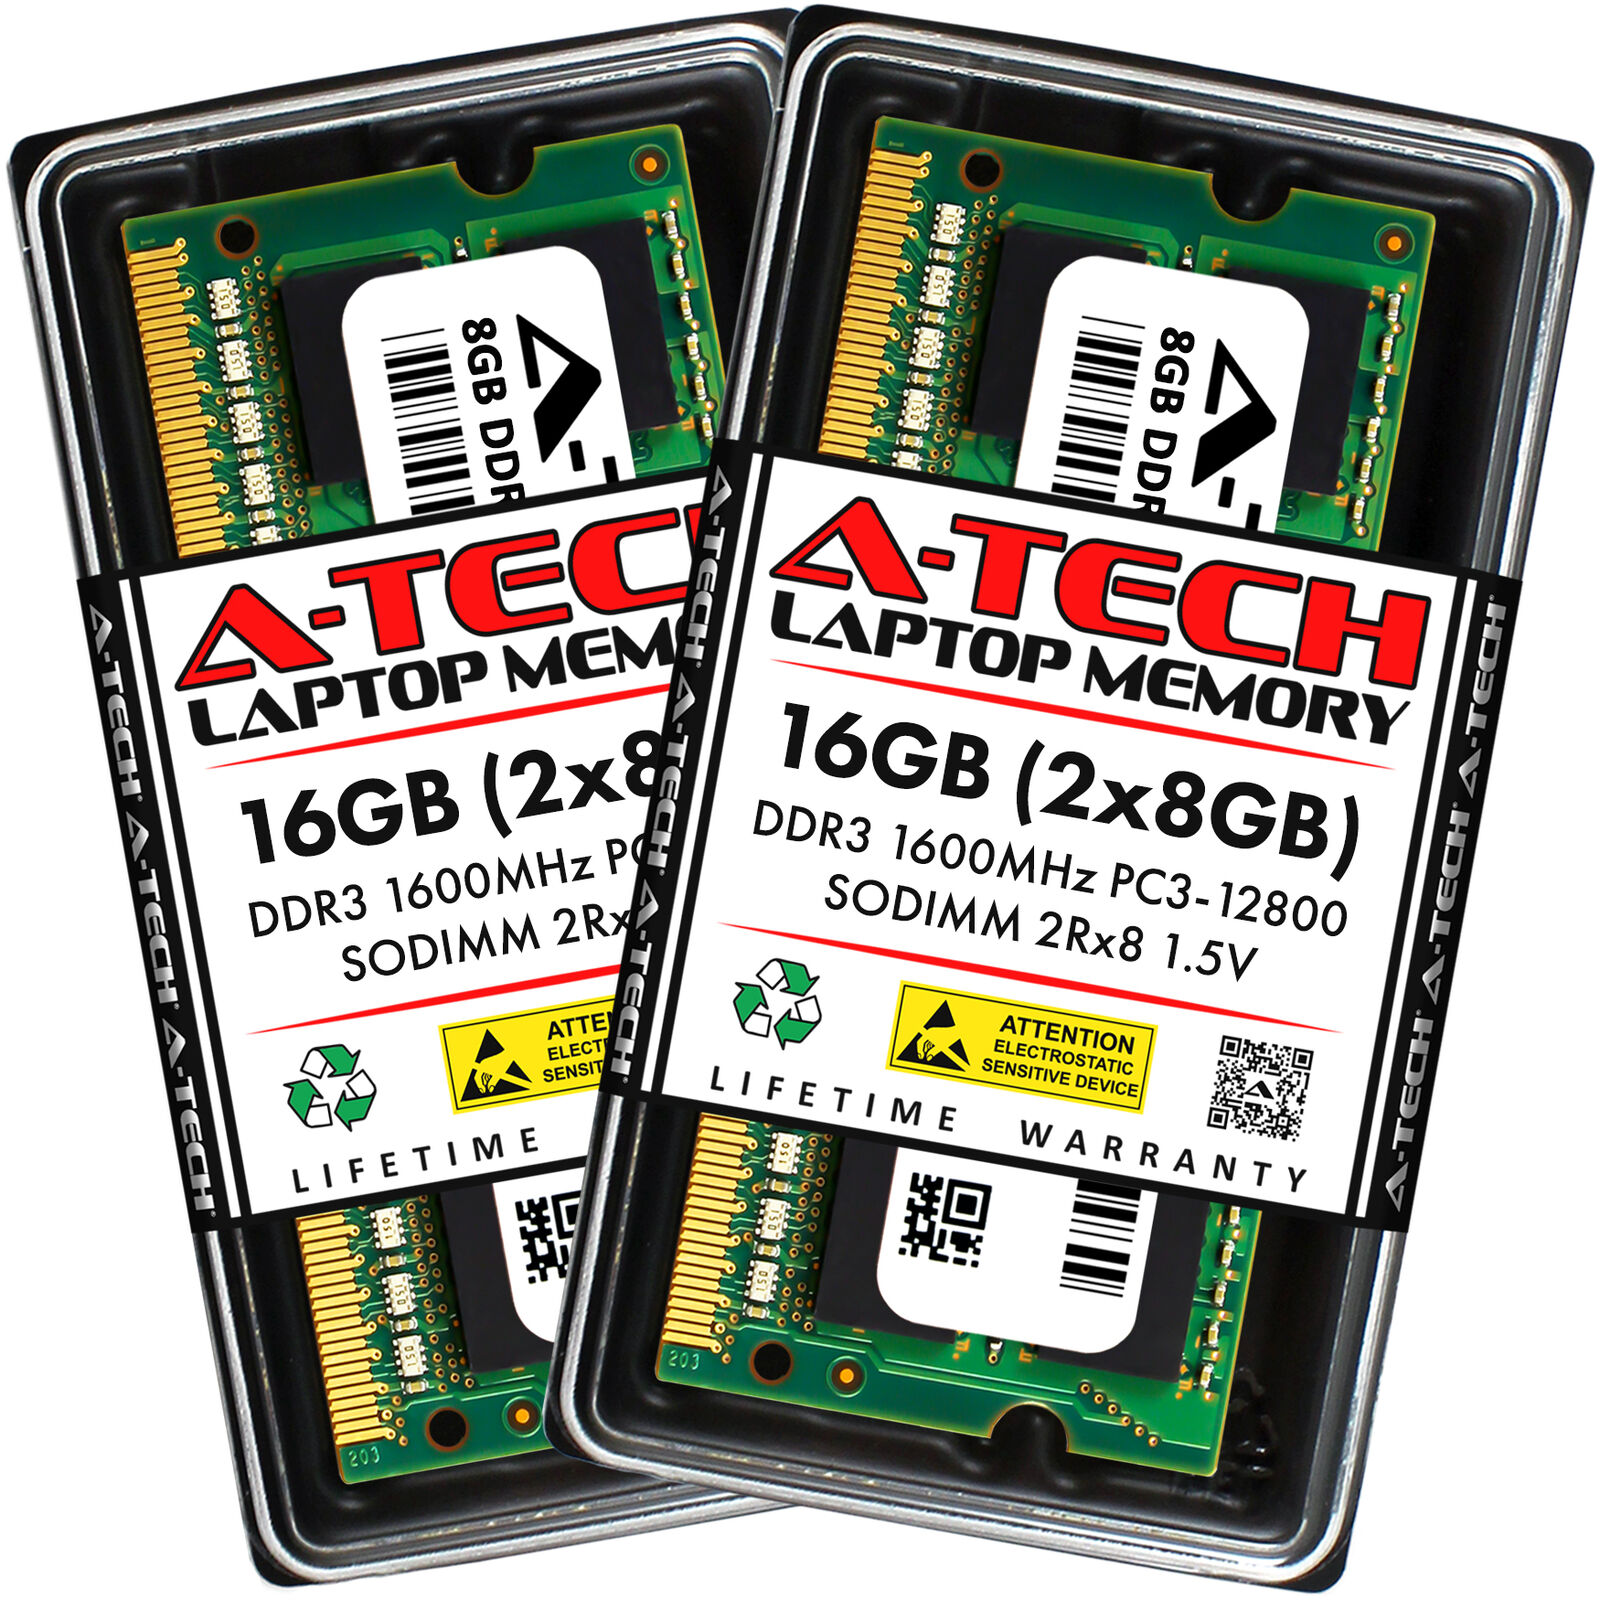 16GB 2x8GB PC3-12800S DynaBook Satellite Pro L850 C40-A-002 C40-A-005 Memory RAM